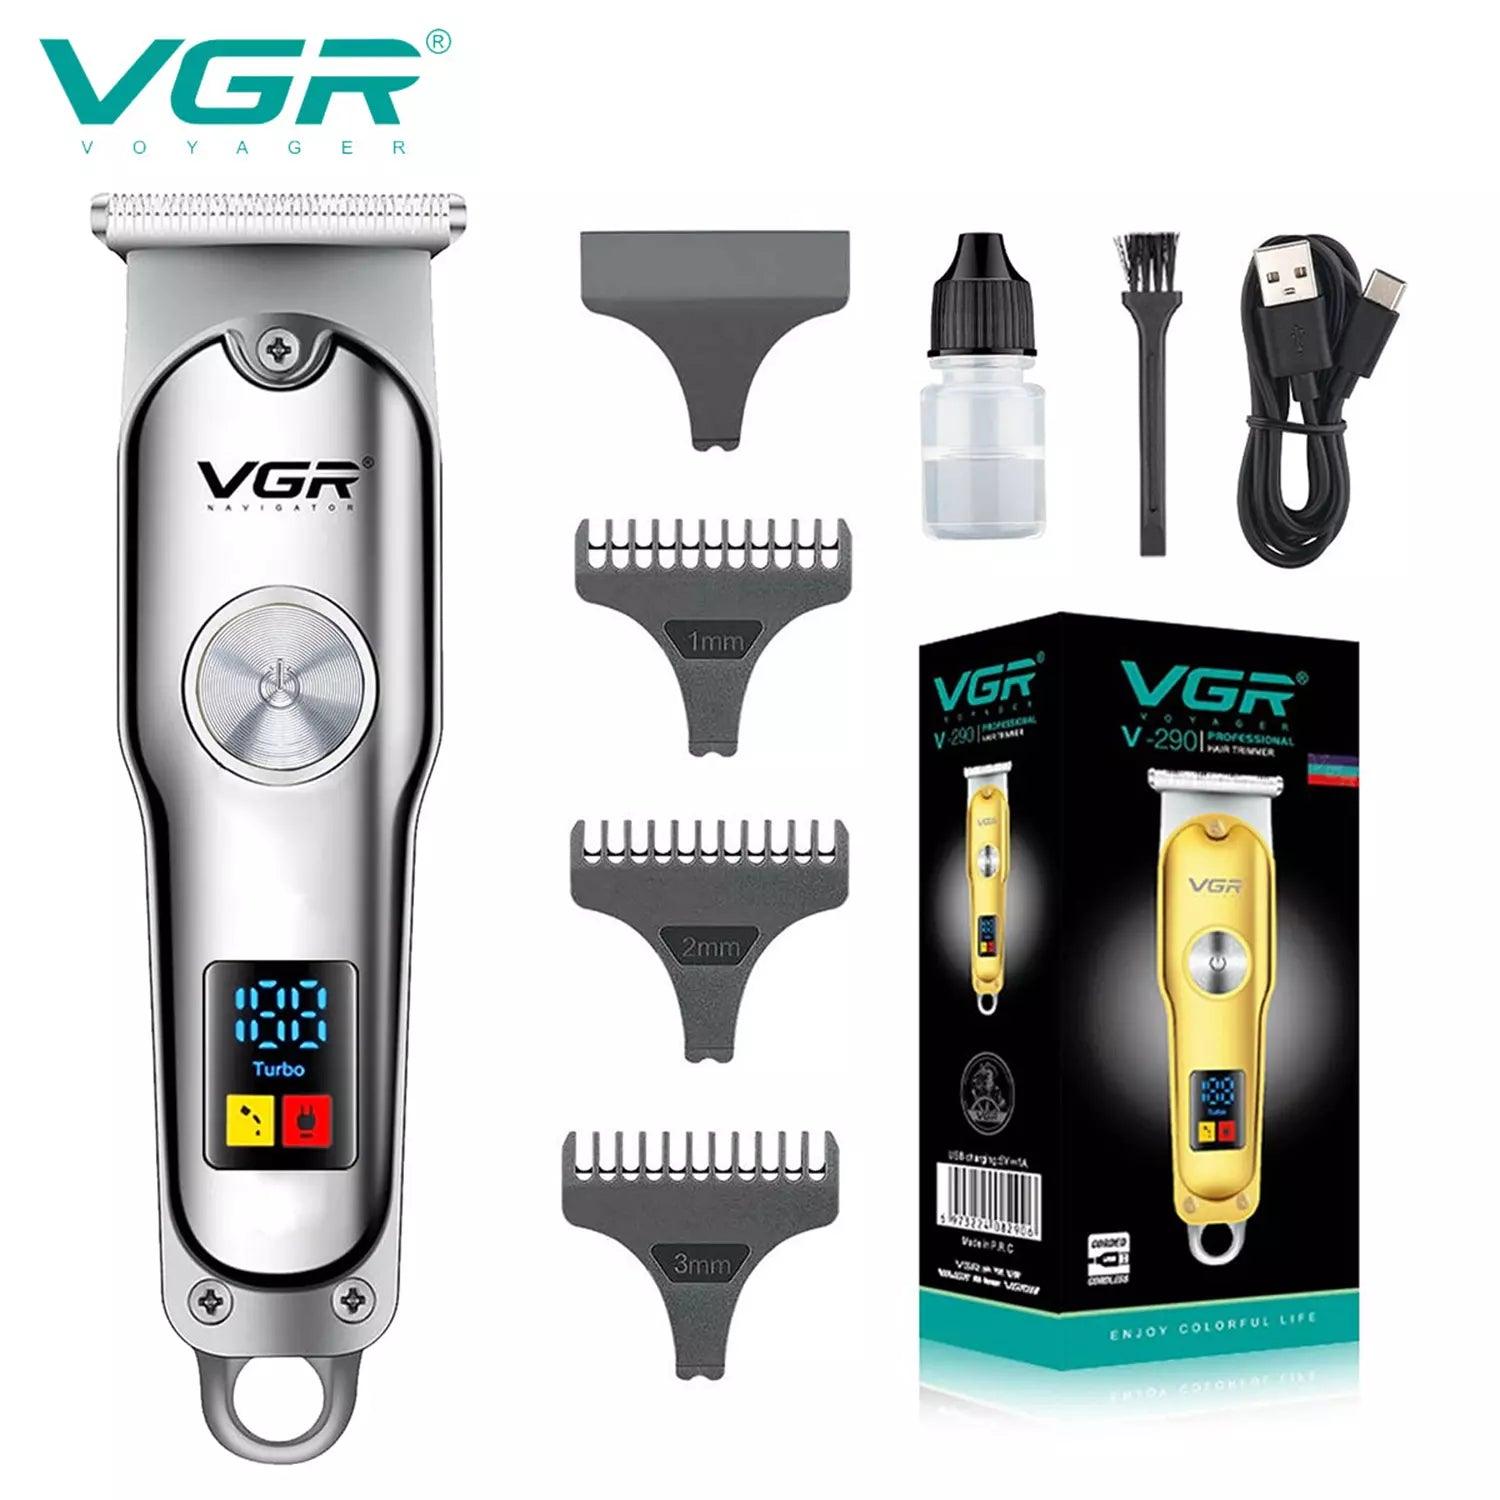 VGR, VGRindia, VGRofficial, VGR V-290